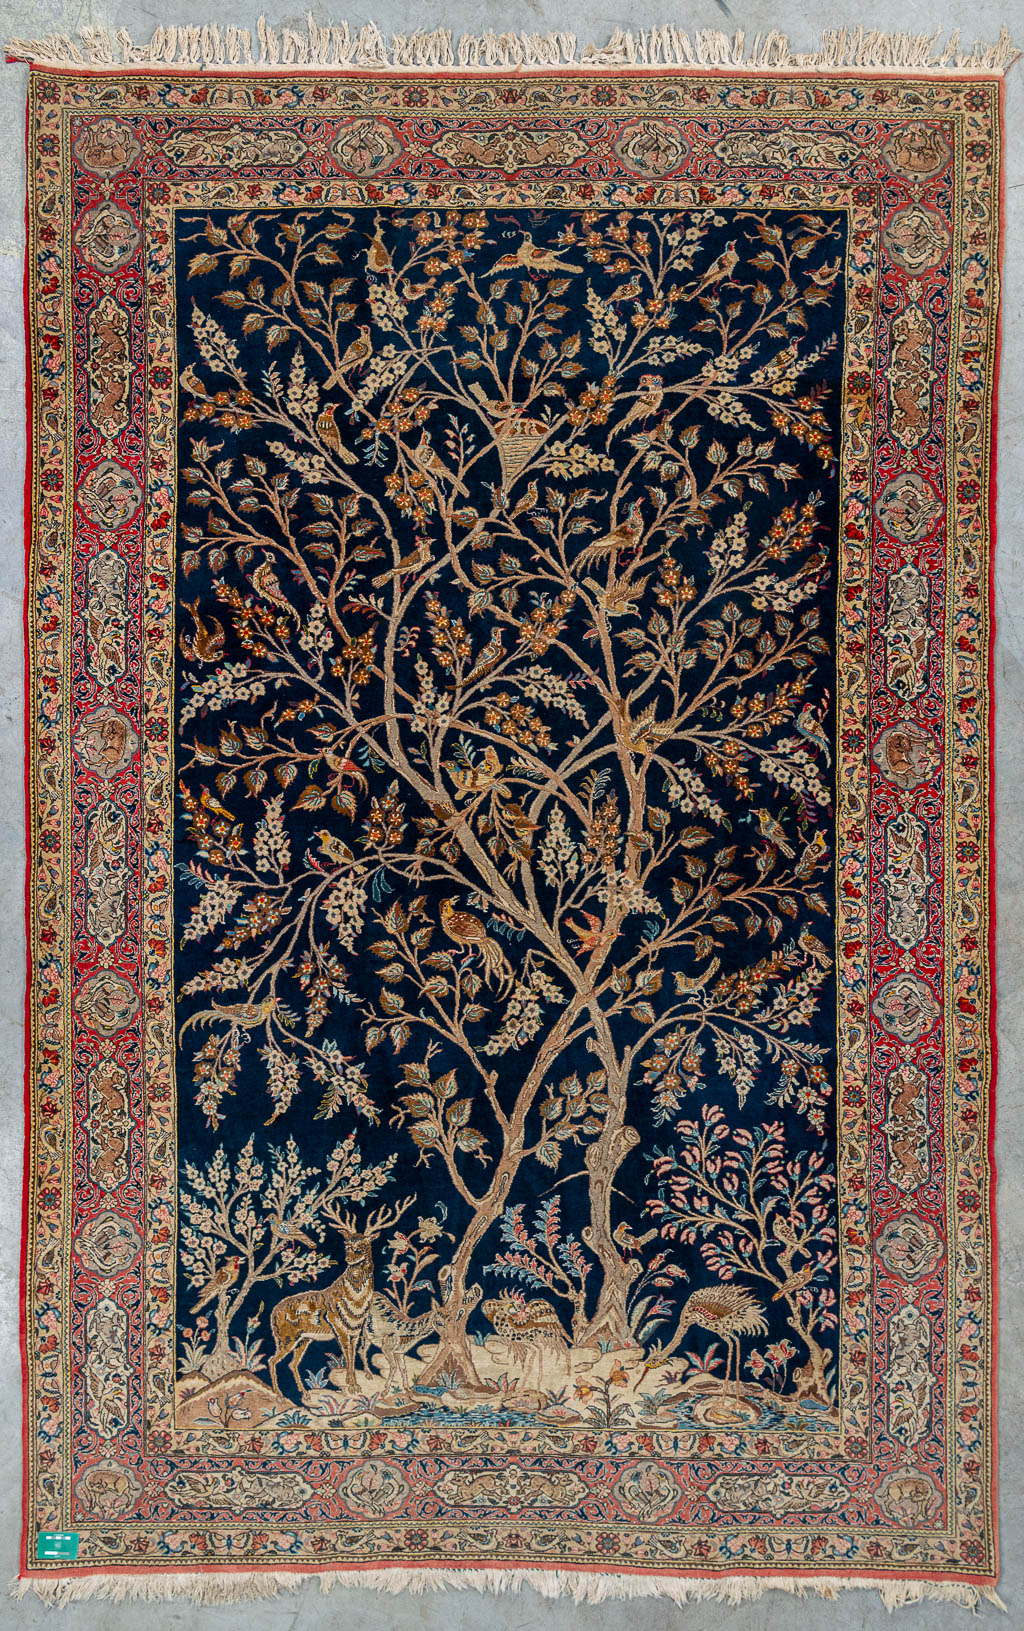 An antique hand-made carpet 